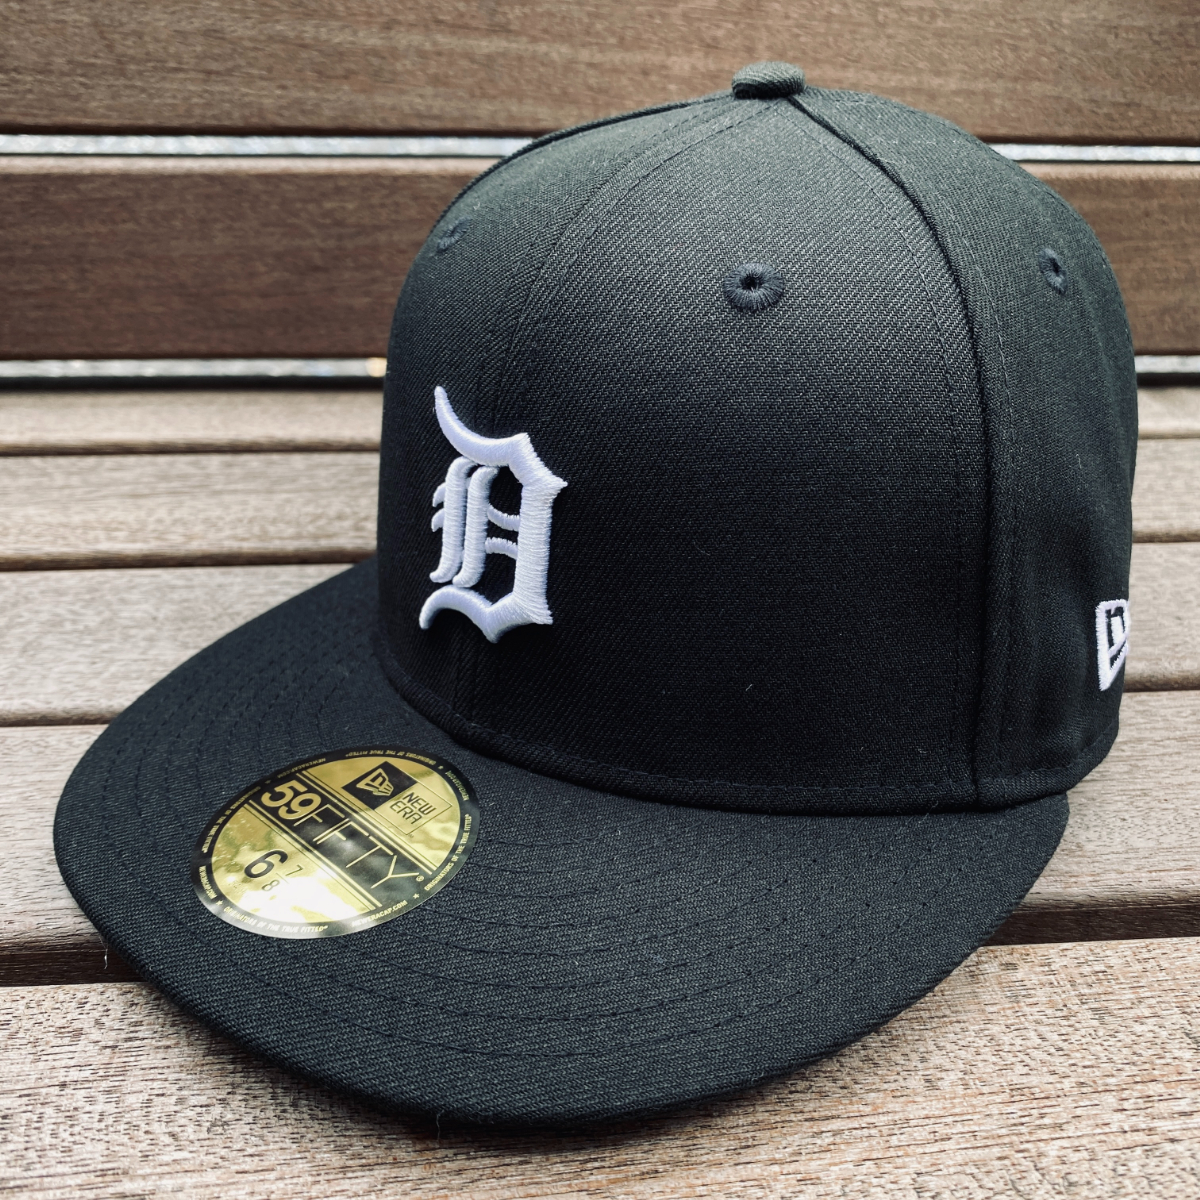 USA正規品 【7.1/8】 NEWERA ニューエラ MLB デトロイト タイガース Tigers 特別色 ブラックエディション 59FIFTY メジャーリーグ 帽子